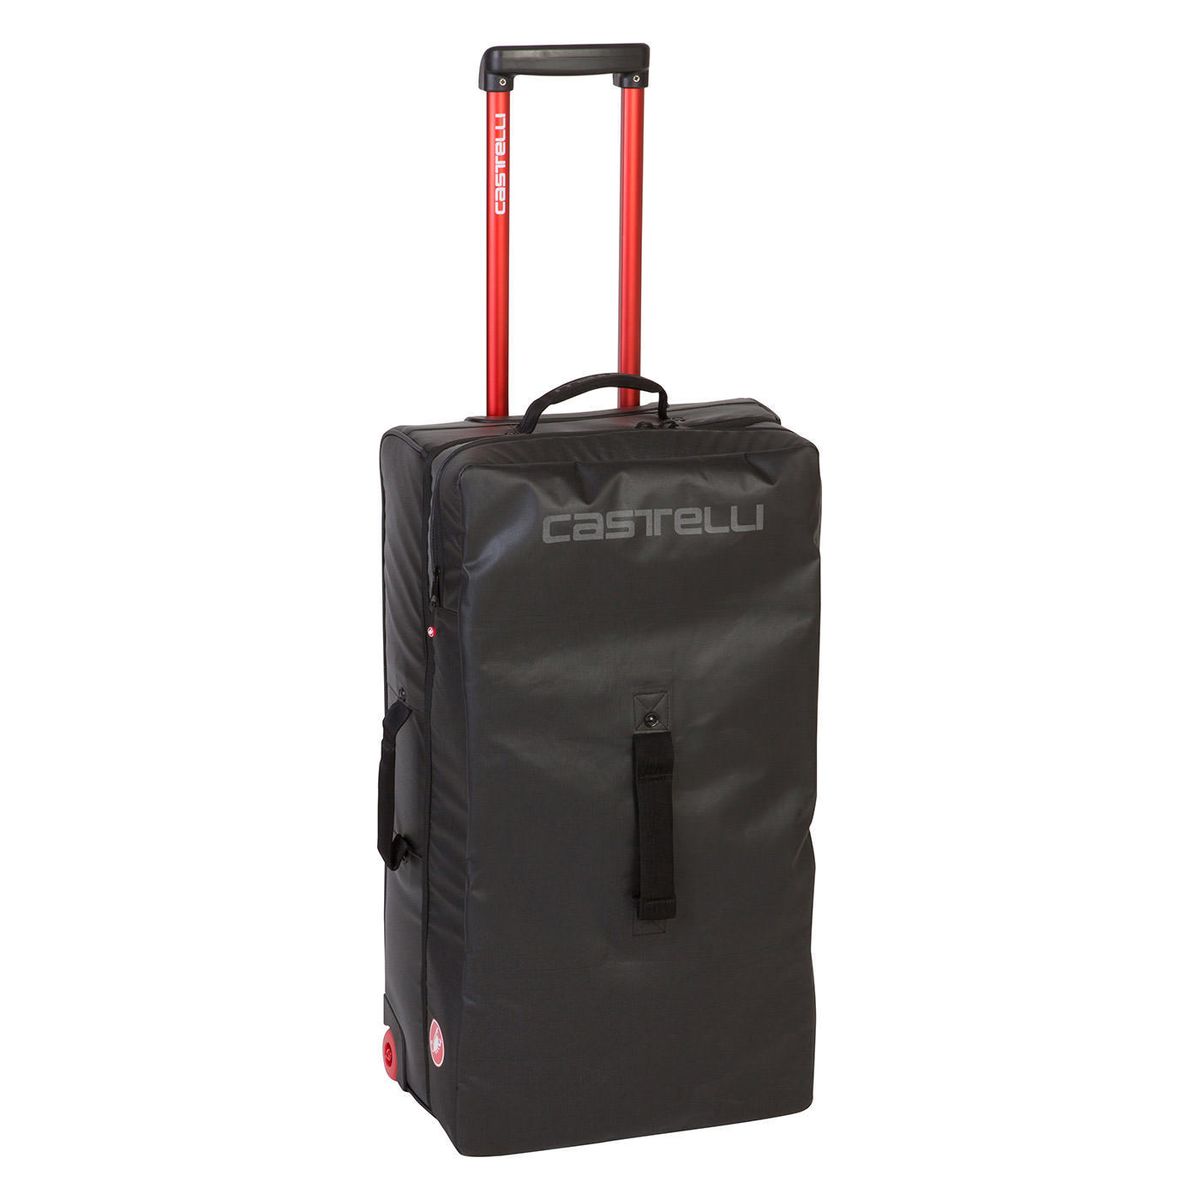 Castelli Rolling Travel Bag 4882cu in